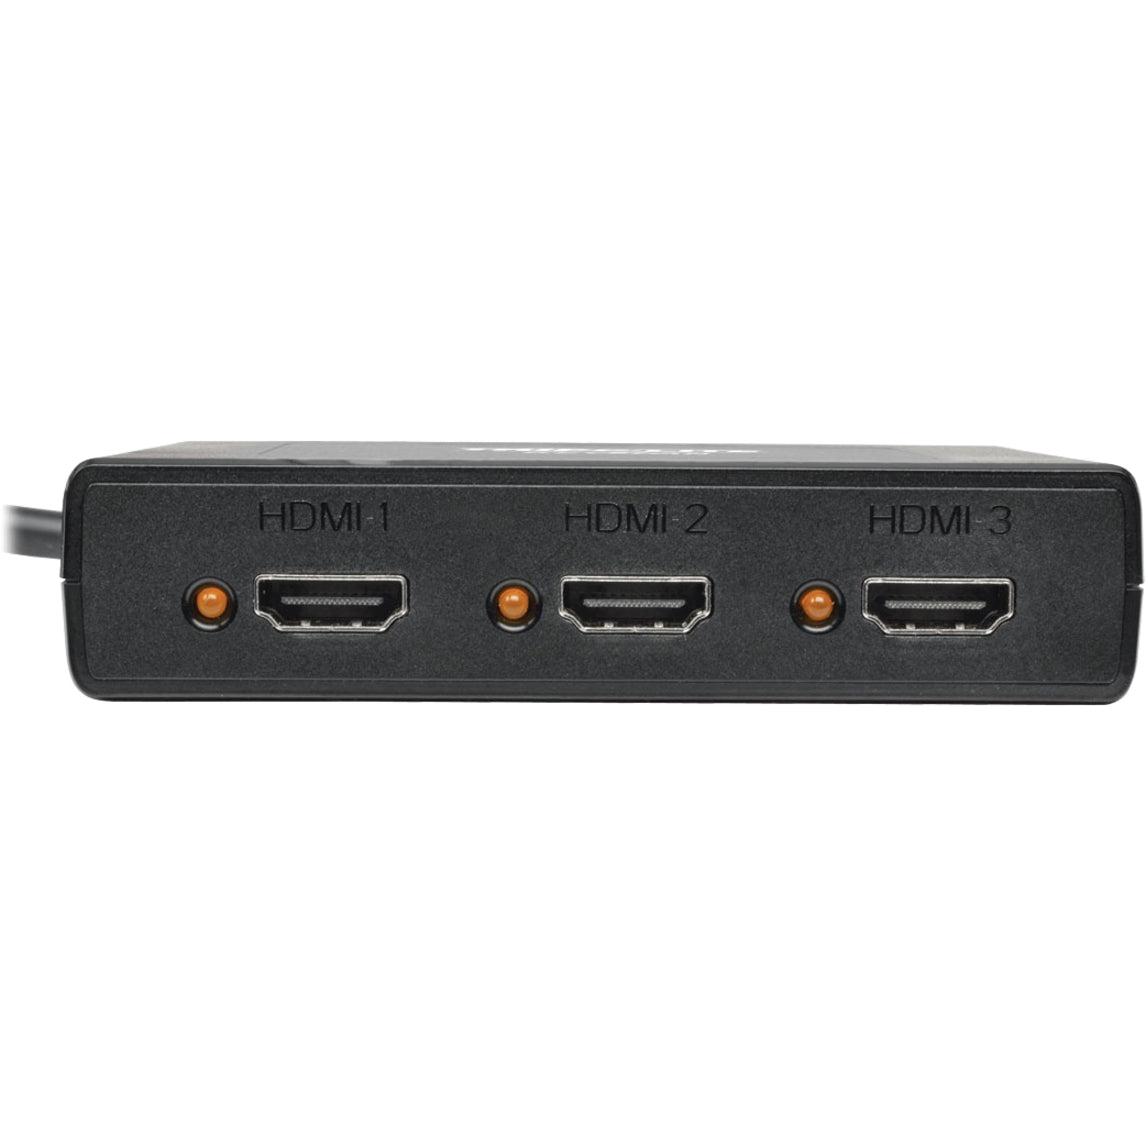 Tripp Lite B156-003-HD-V2 3-Port DisplayPort 1.2 to HDMI MST Hub, 4K Video Resolution, TAA Compliant